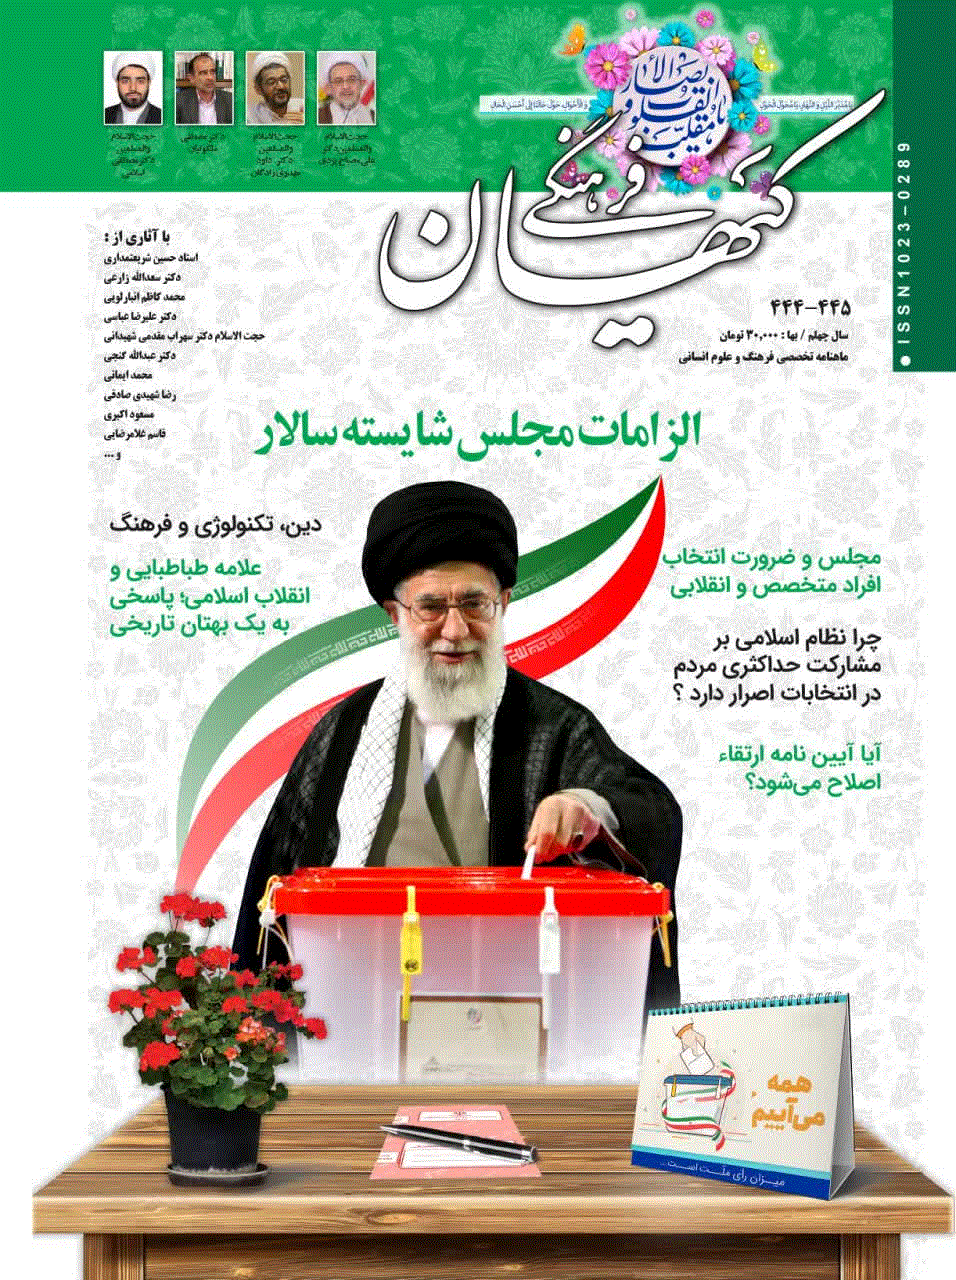 کیهان فرهنگی - خرداد 1366 - شماره 39